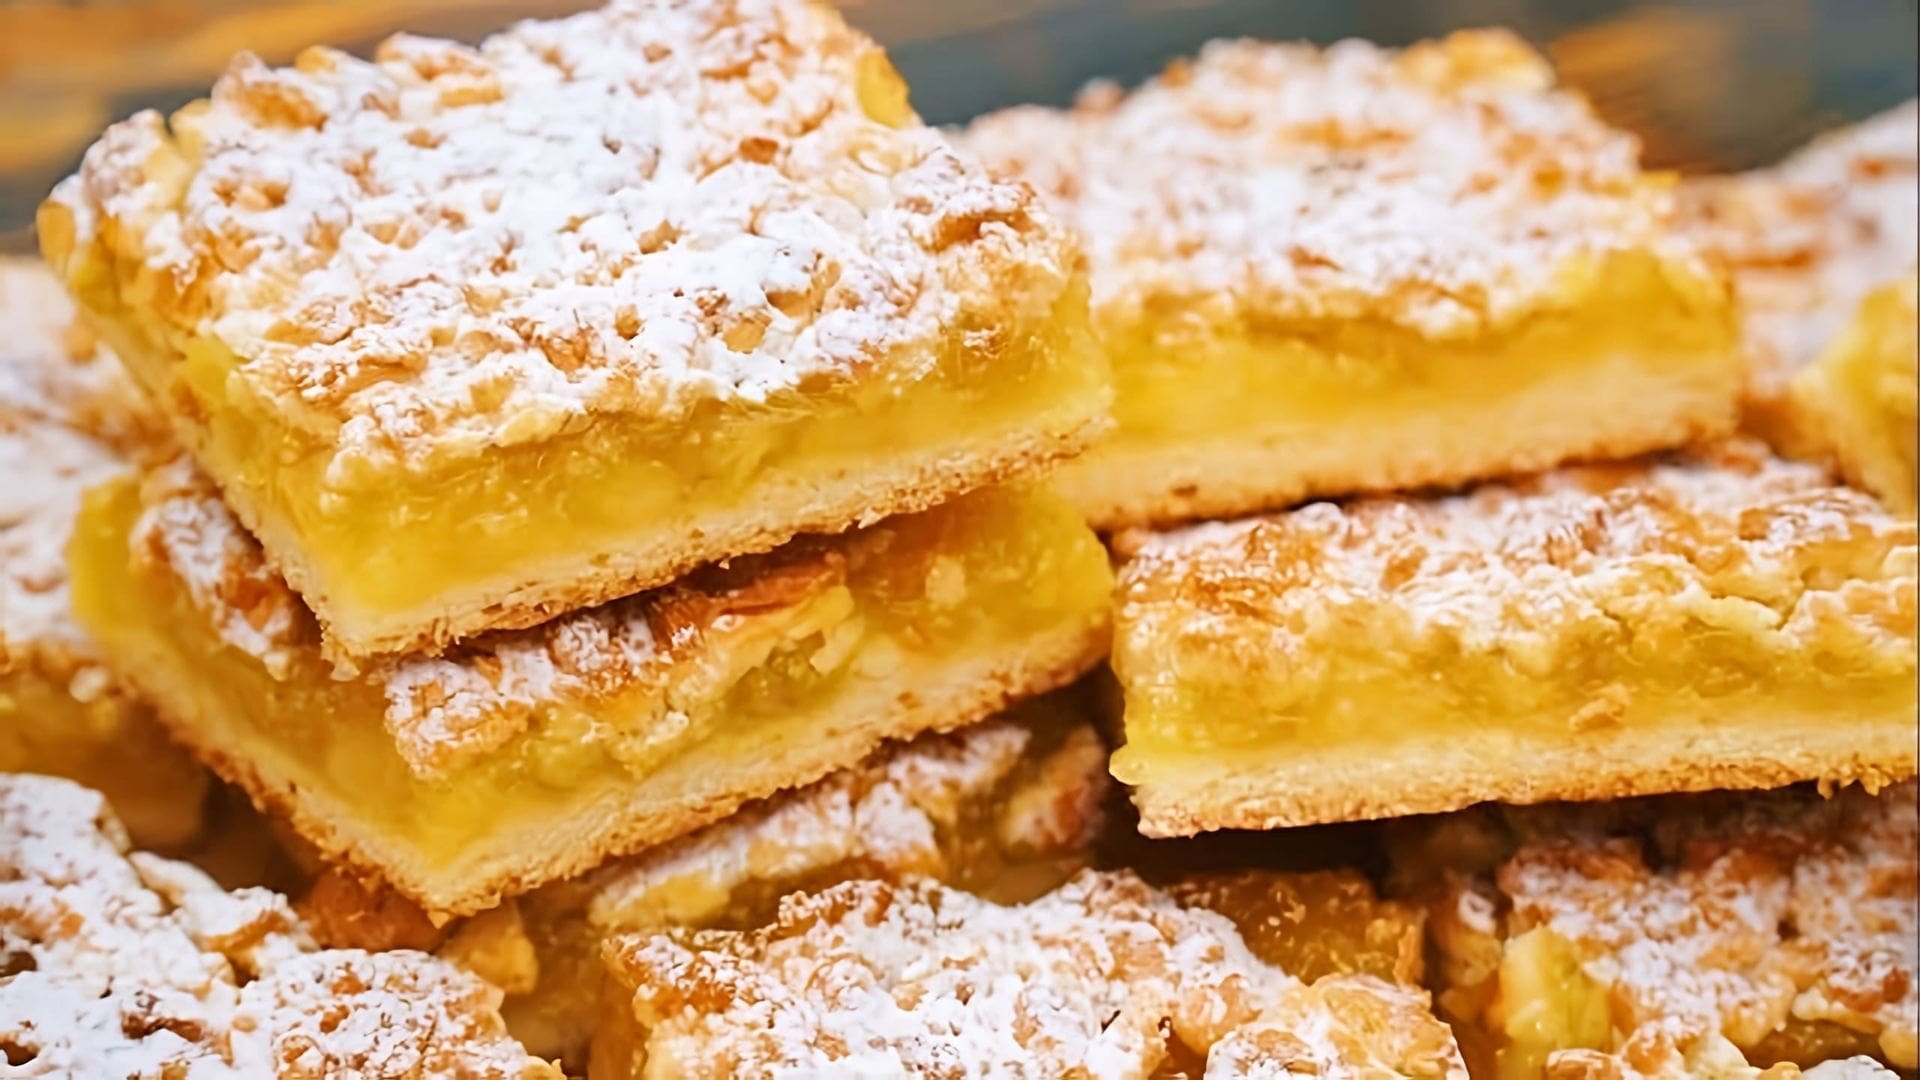 Видео рецепт лимонного пирога или венских печенья, называемых "терты пирог"